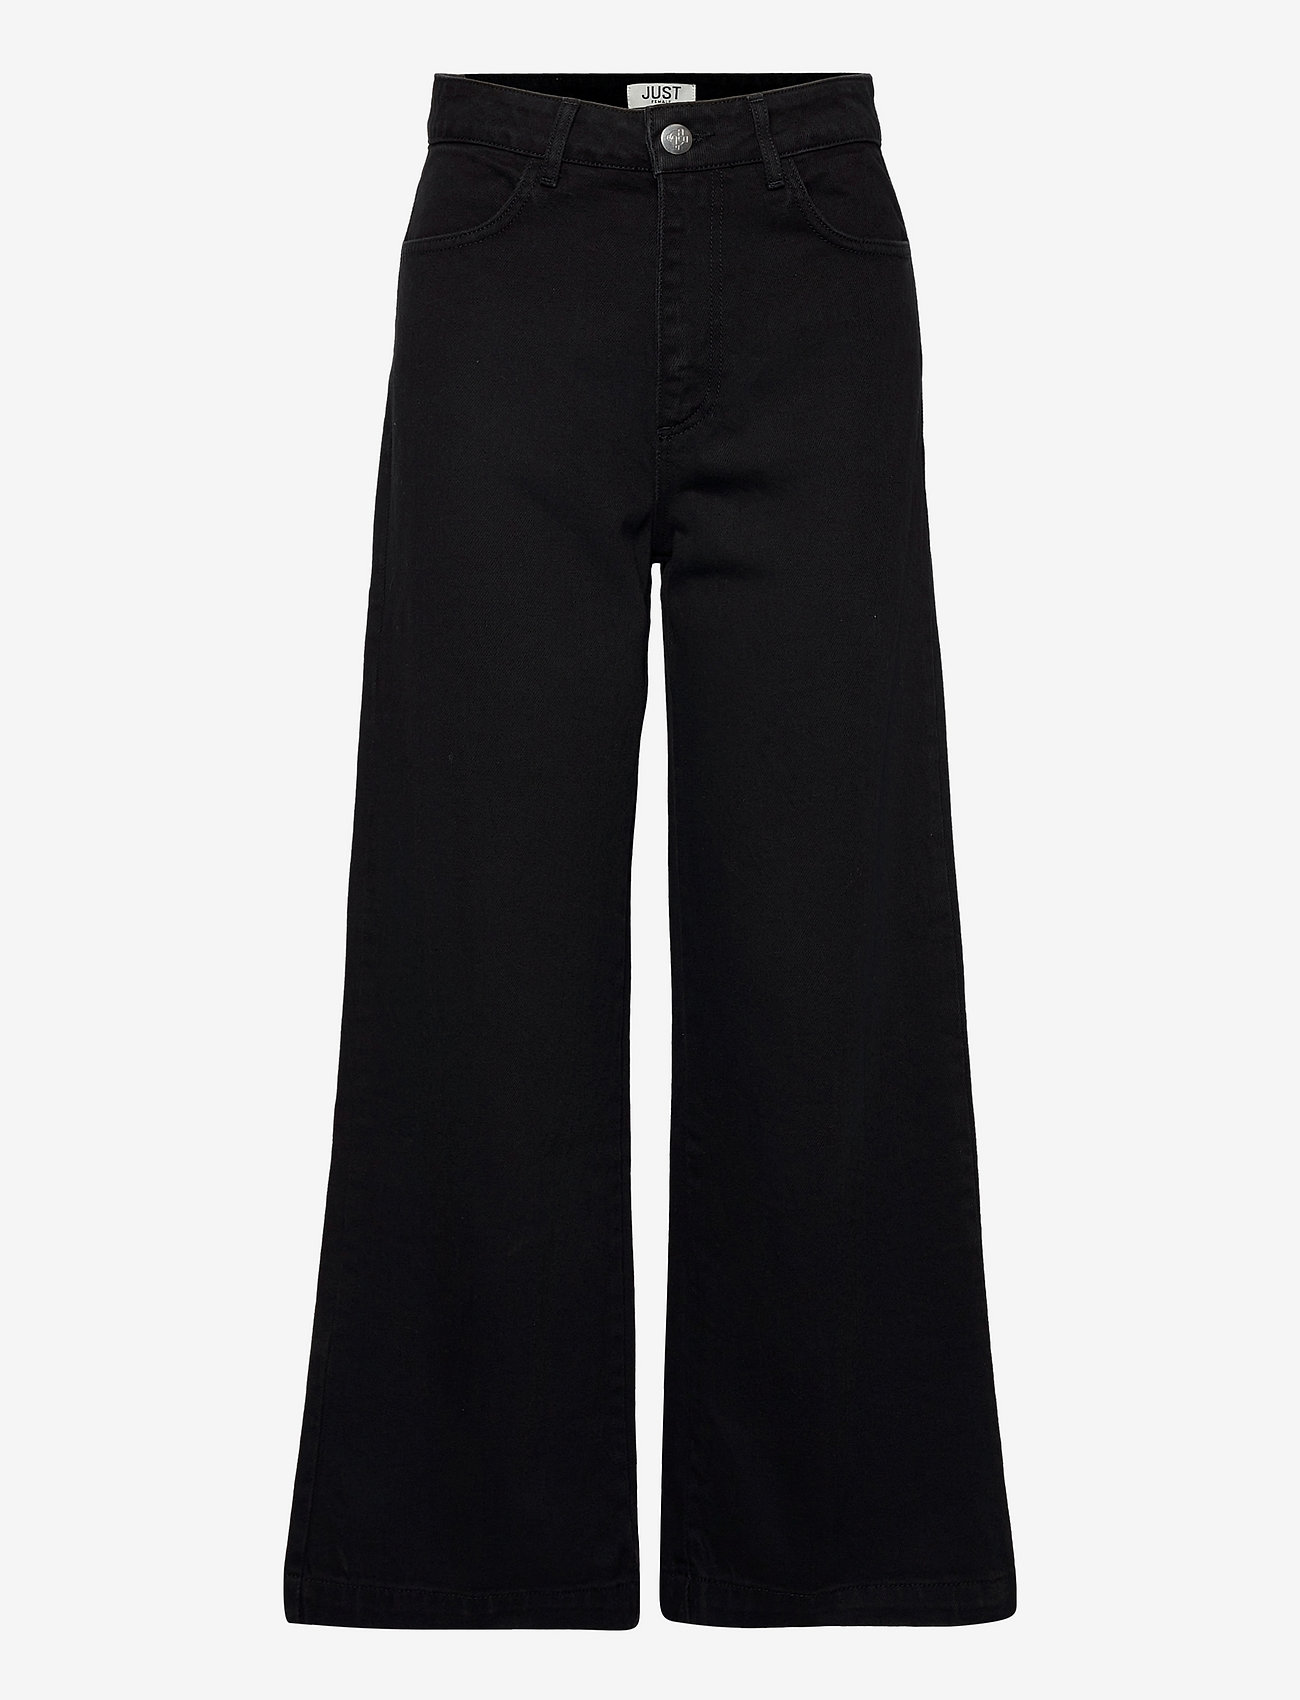 Just Female - Calm black jeans - hosen mit weitem bein - black - 0